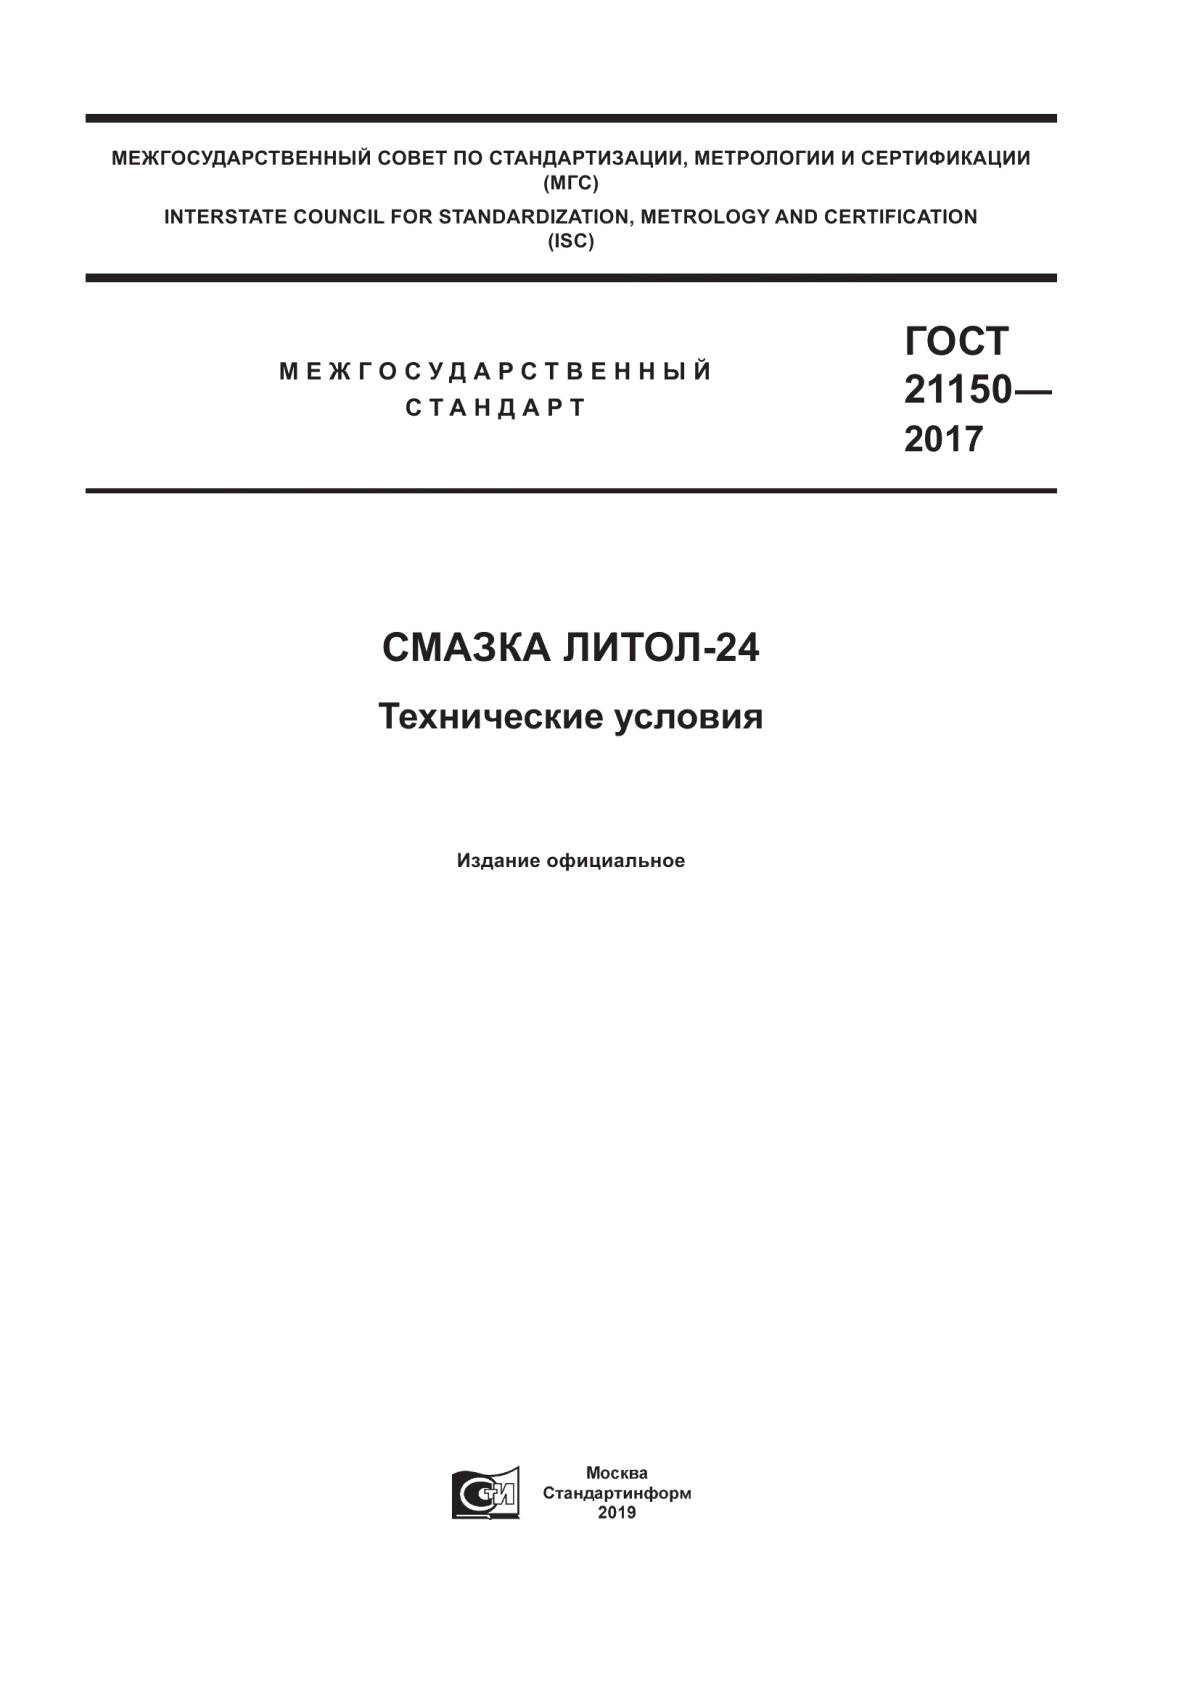 ГОСТ 21150-2017 Смазка Литол-24. Технические условия